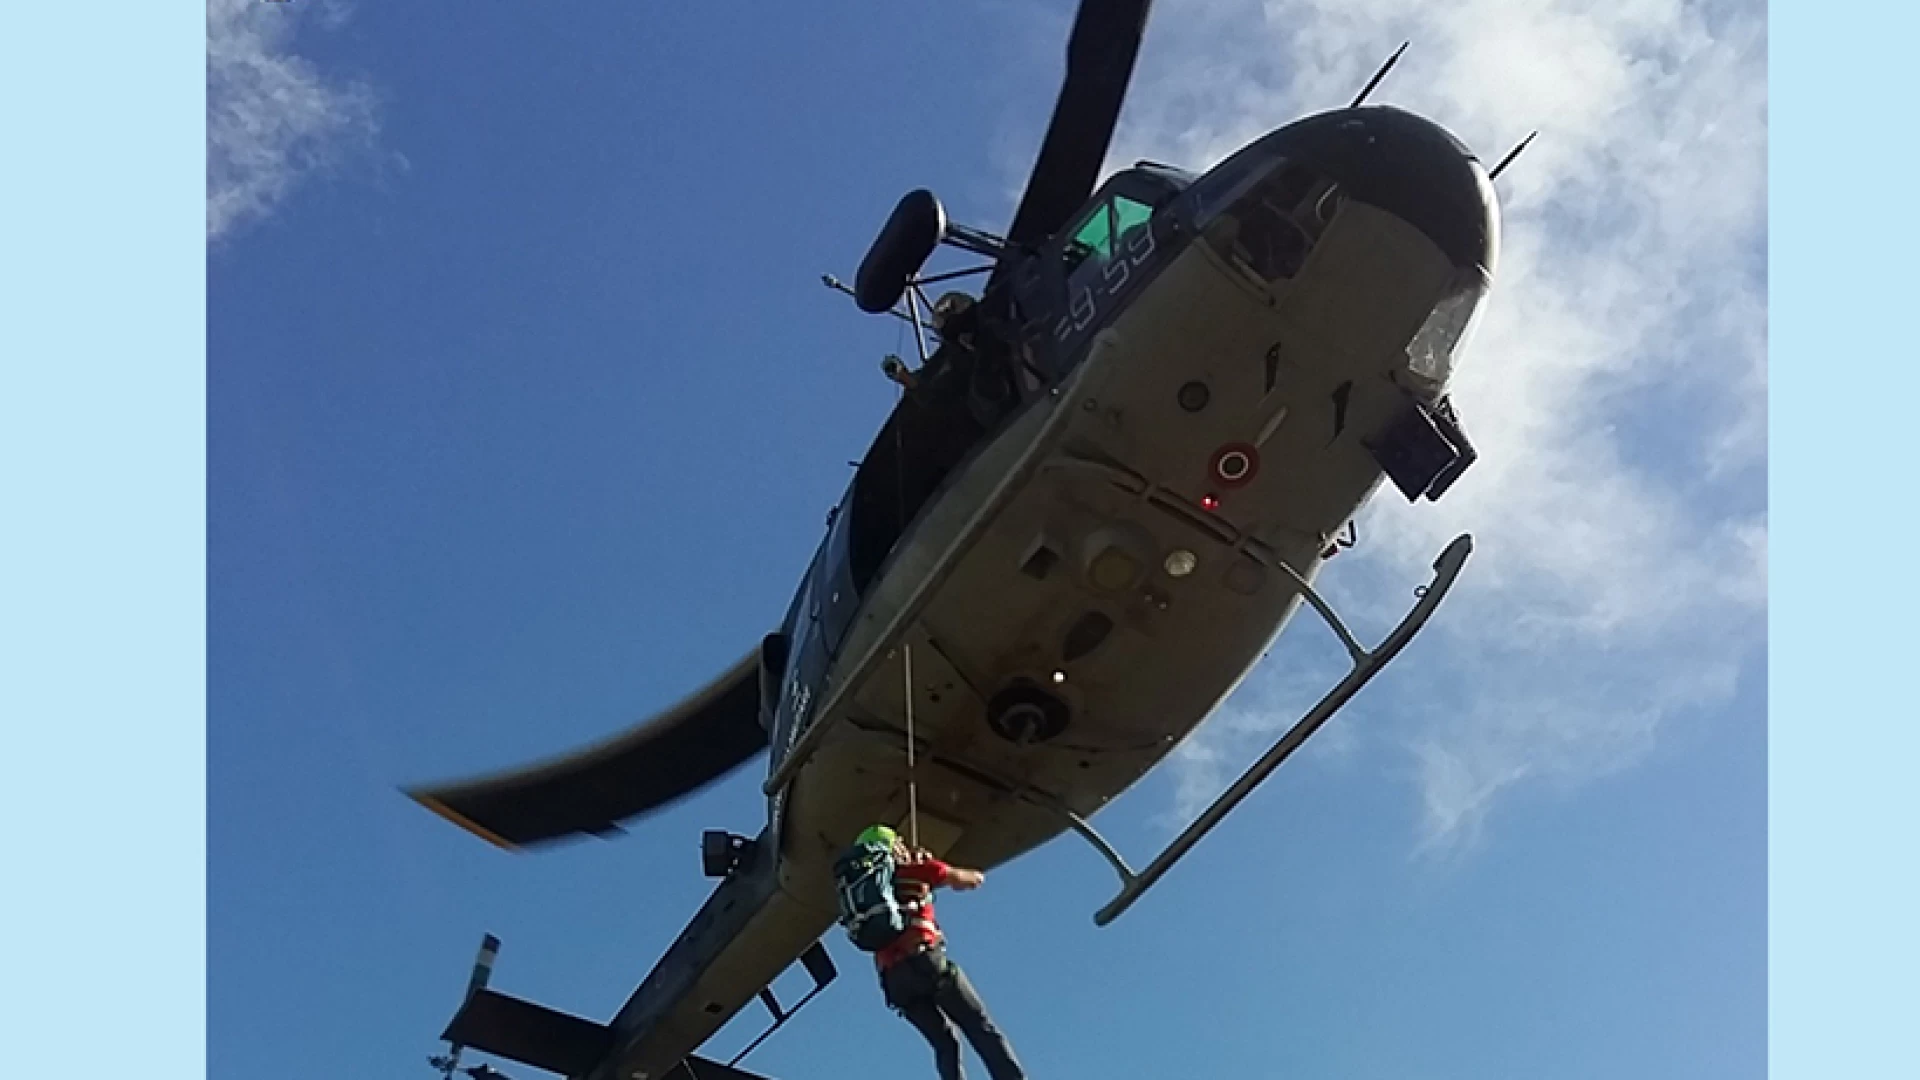 Esercitazione del Corpo Nazionale Soccorso Alpino e Speleologico con elicotteri dell’Aeronautica Militare.